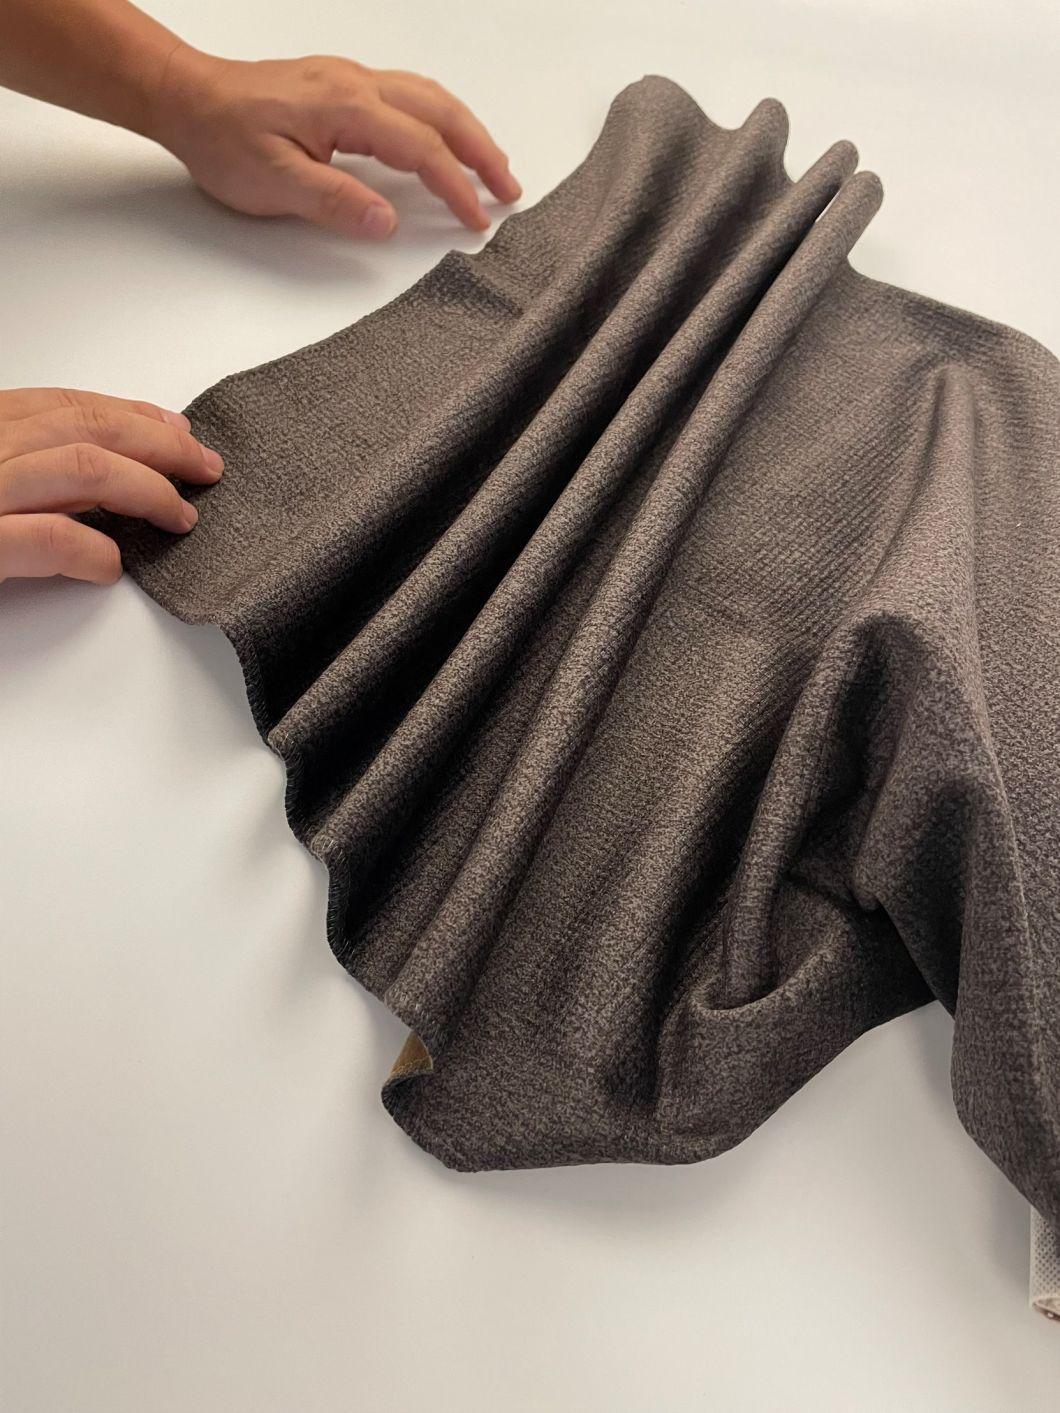 New Arrival Printed Velvet Upholstery Fabric Sofa Cloth Furniture Material Mosha Velvet (PT014)